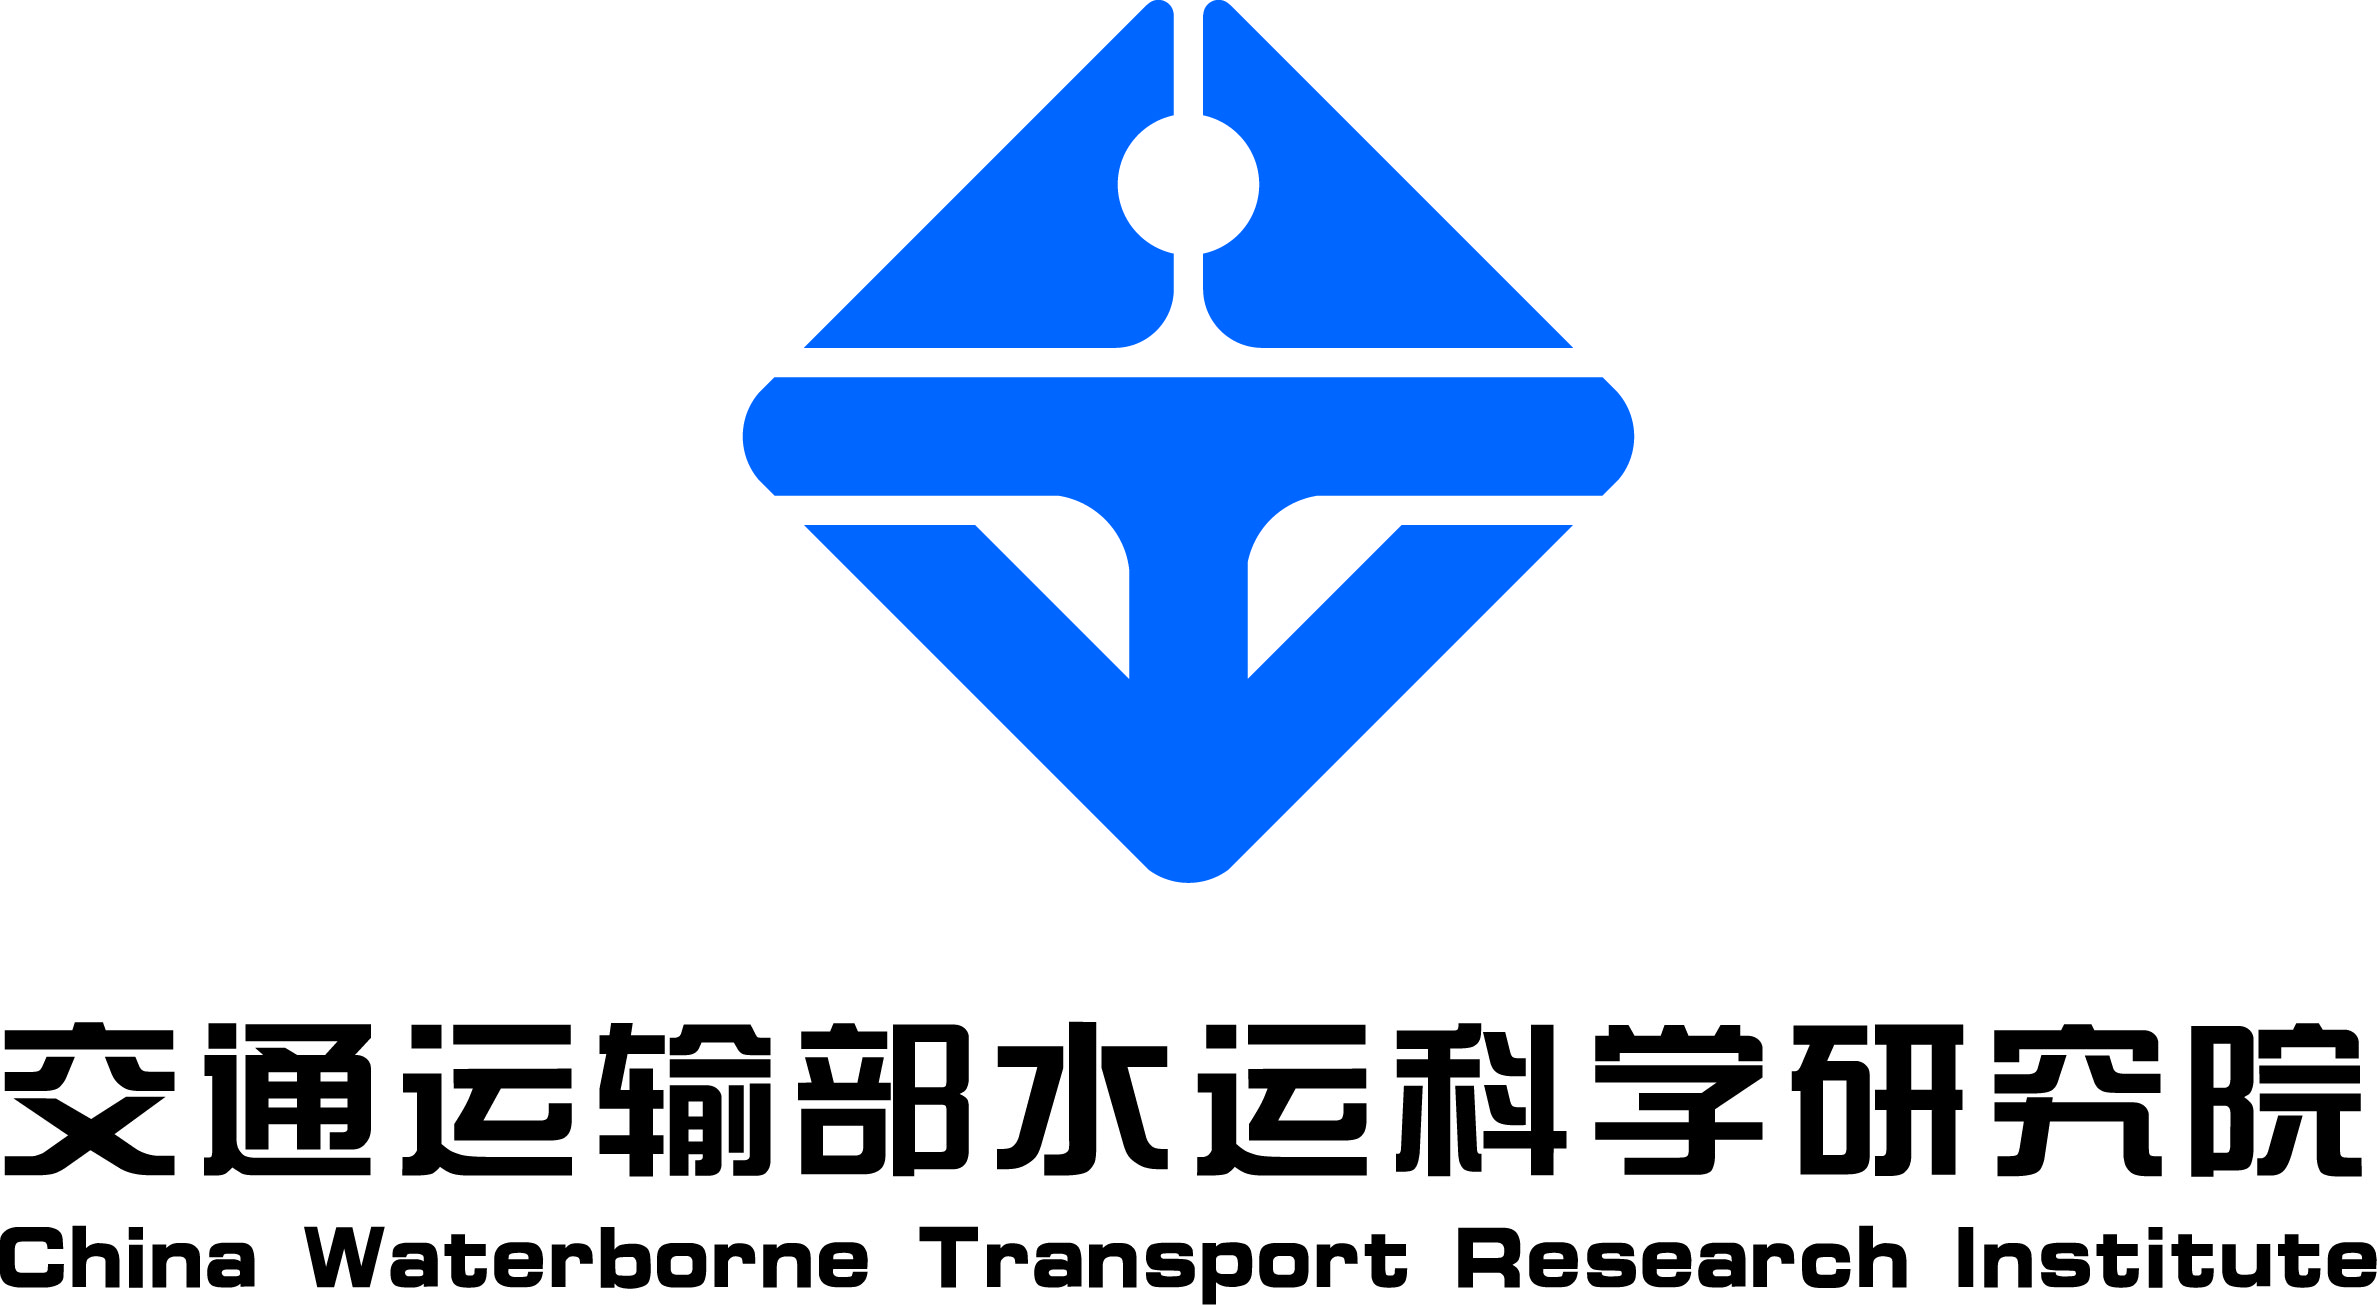 支持单位-交通运输铝水运科学研究院（China Waterborne Transport Research Institute）.jpg